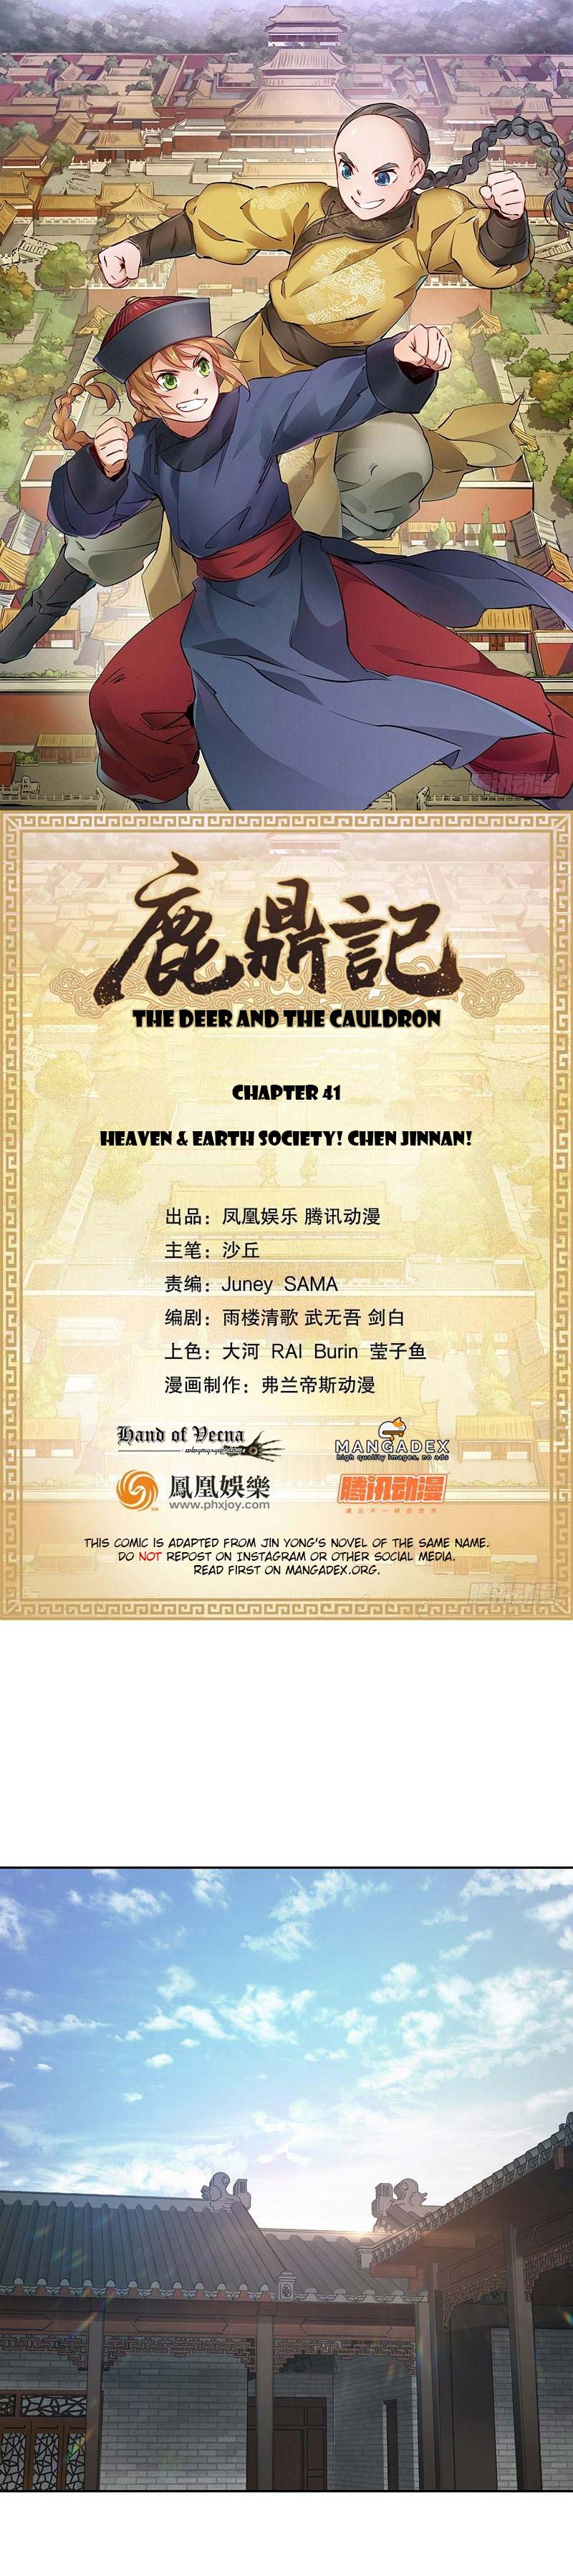 The Deer and the Cauldron Ch. 41 Heaven & Earth Society! Chen Jinnan!